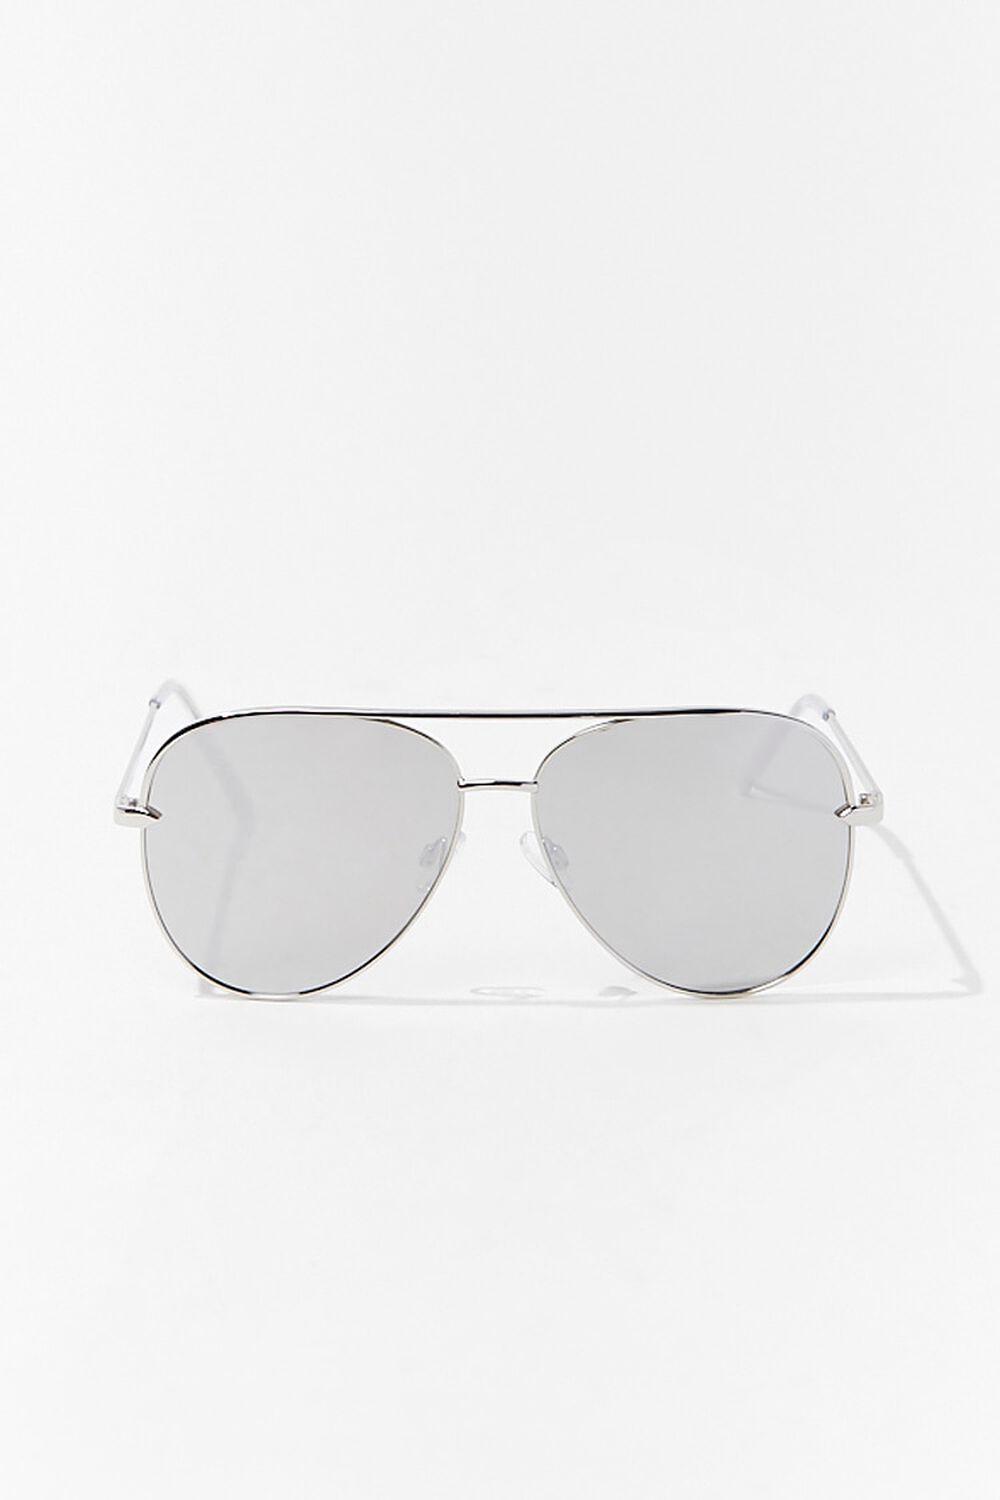 SILVER/SILVER Premium Aviator Sunglasses, image 1